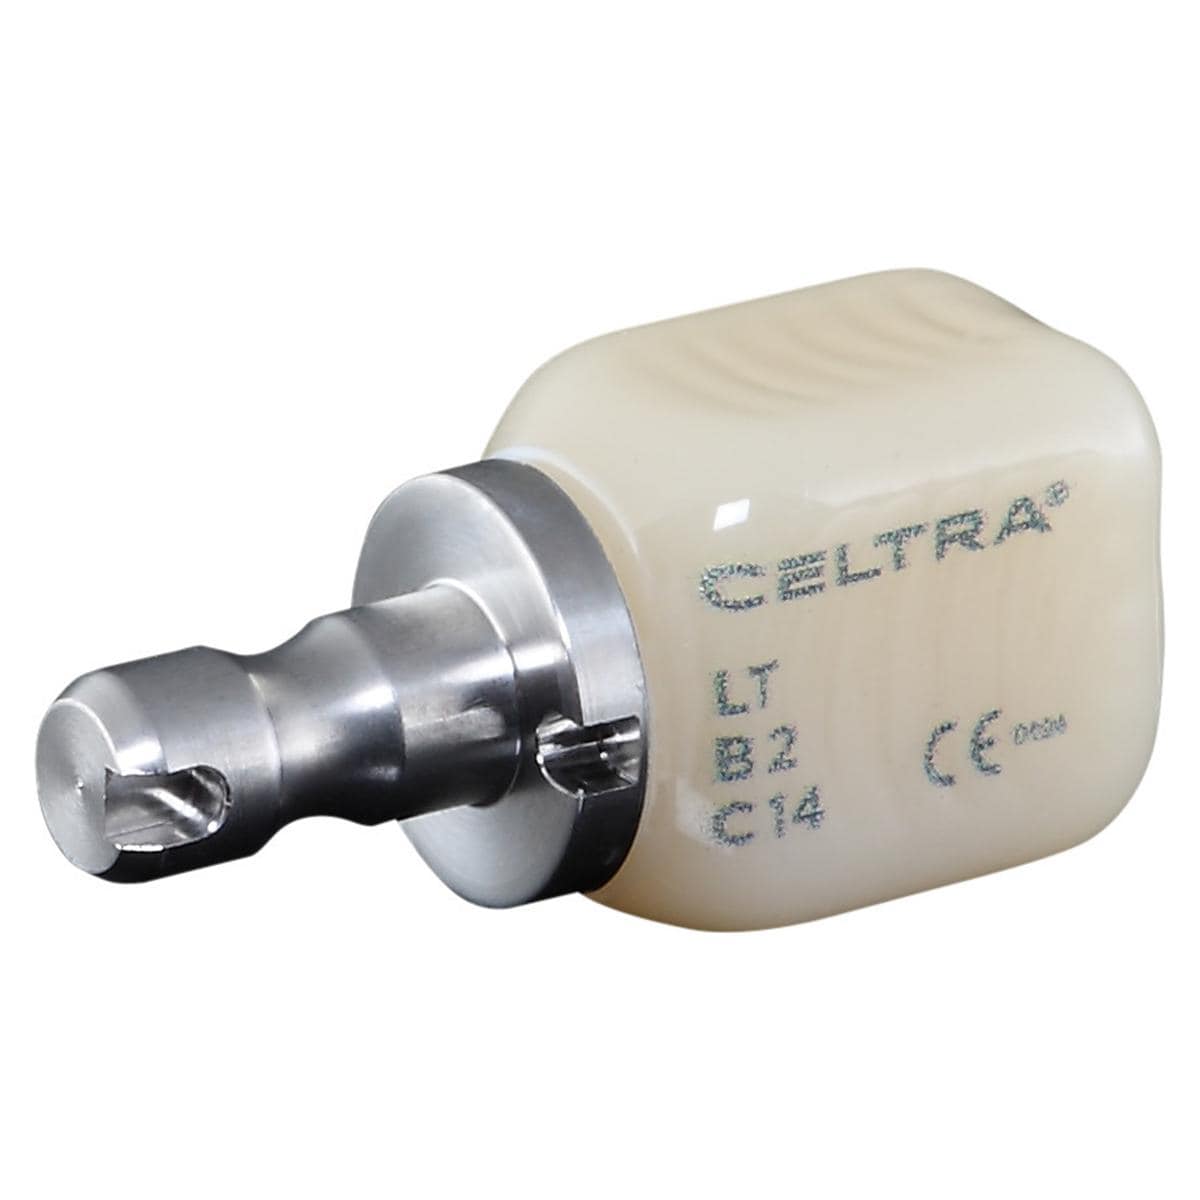 CELTRA® DUO LT - Nachfüllpackung - B2, Größe C14, Packung 4 Stück